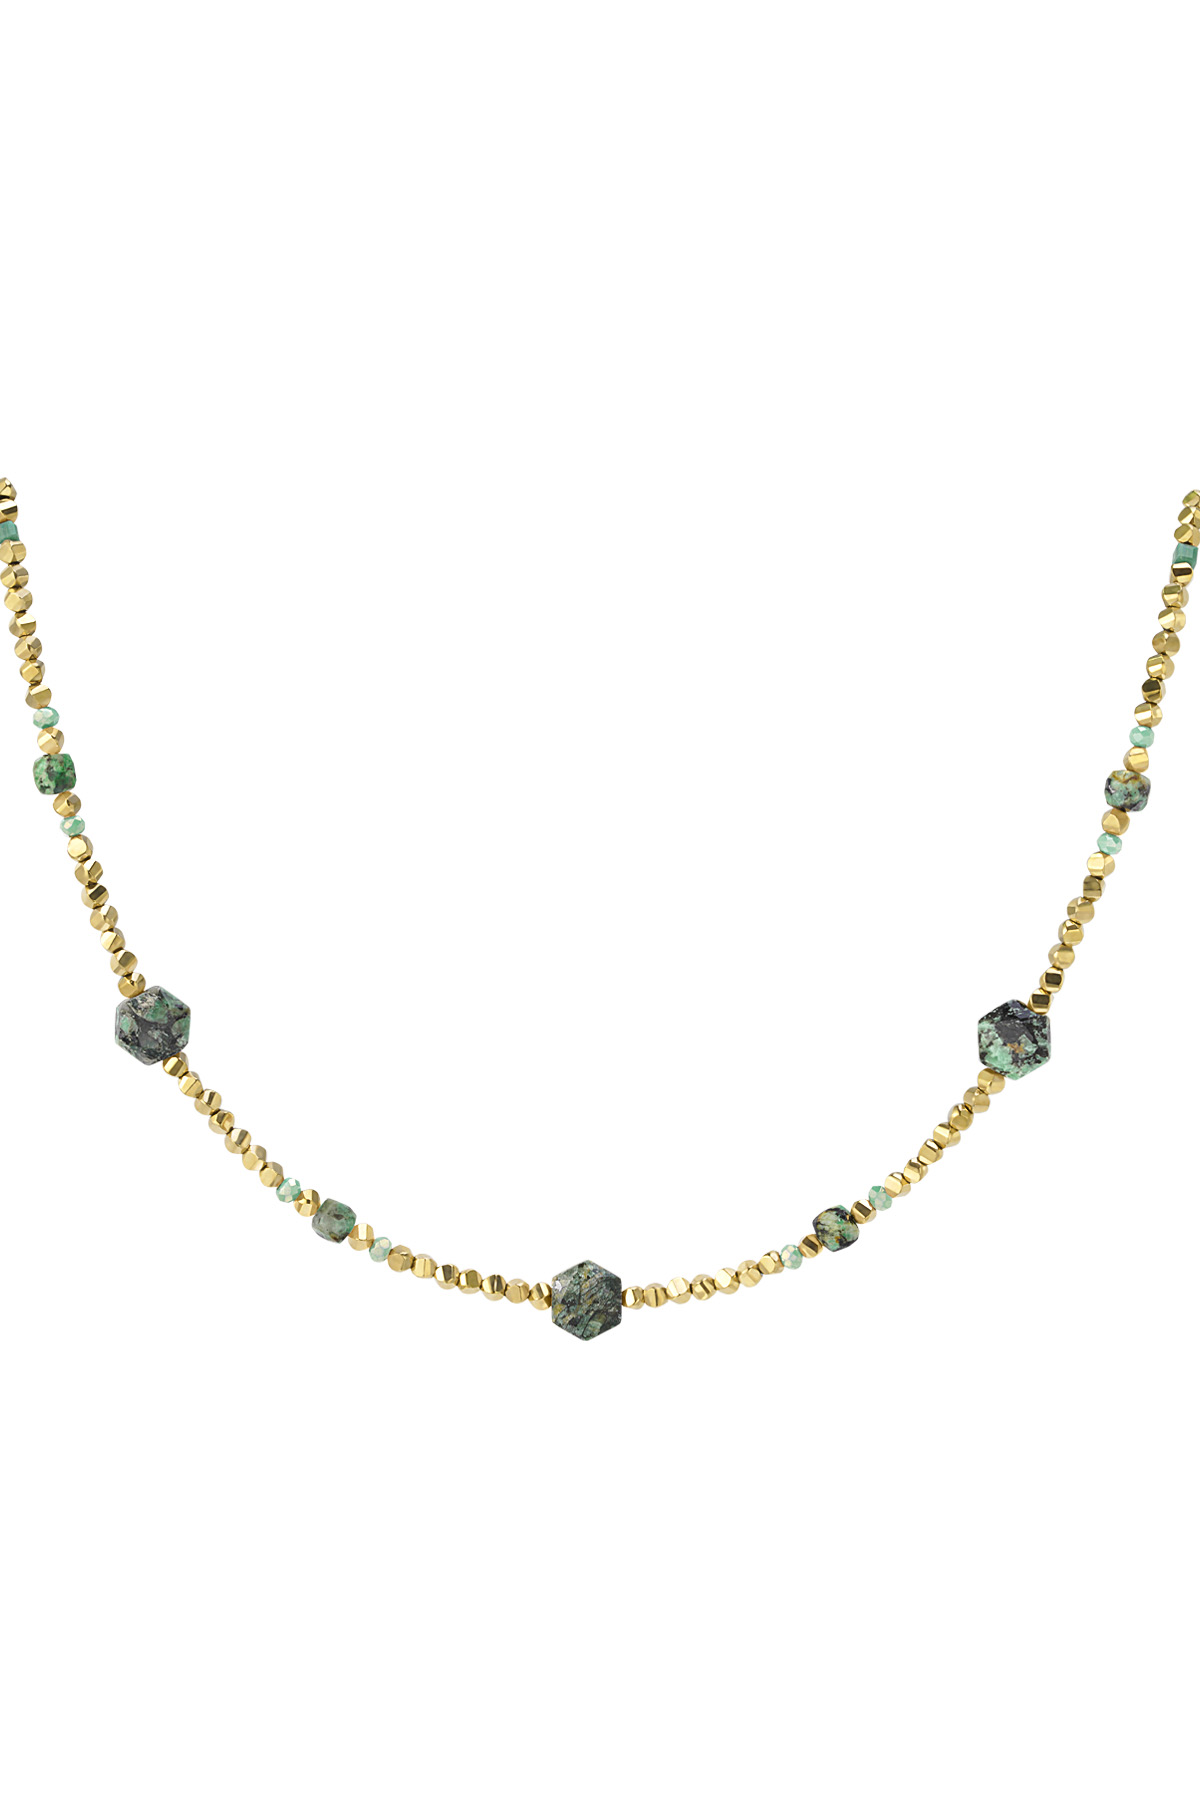 Collier perlé différentes perles - vert & doré Acier Inoxydable h5 